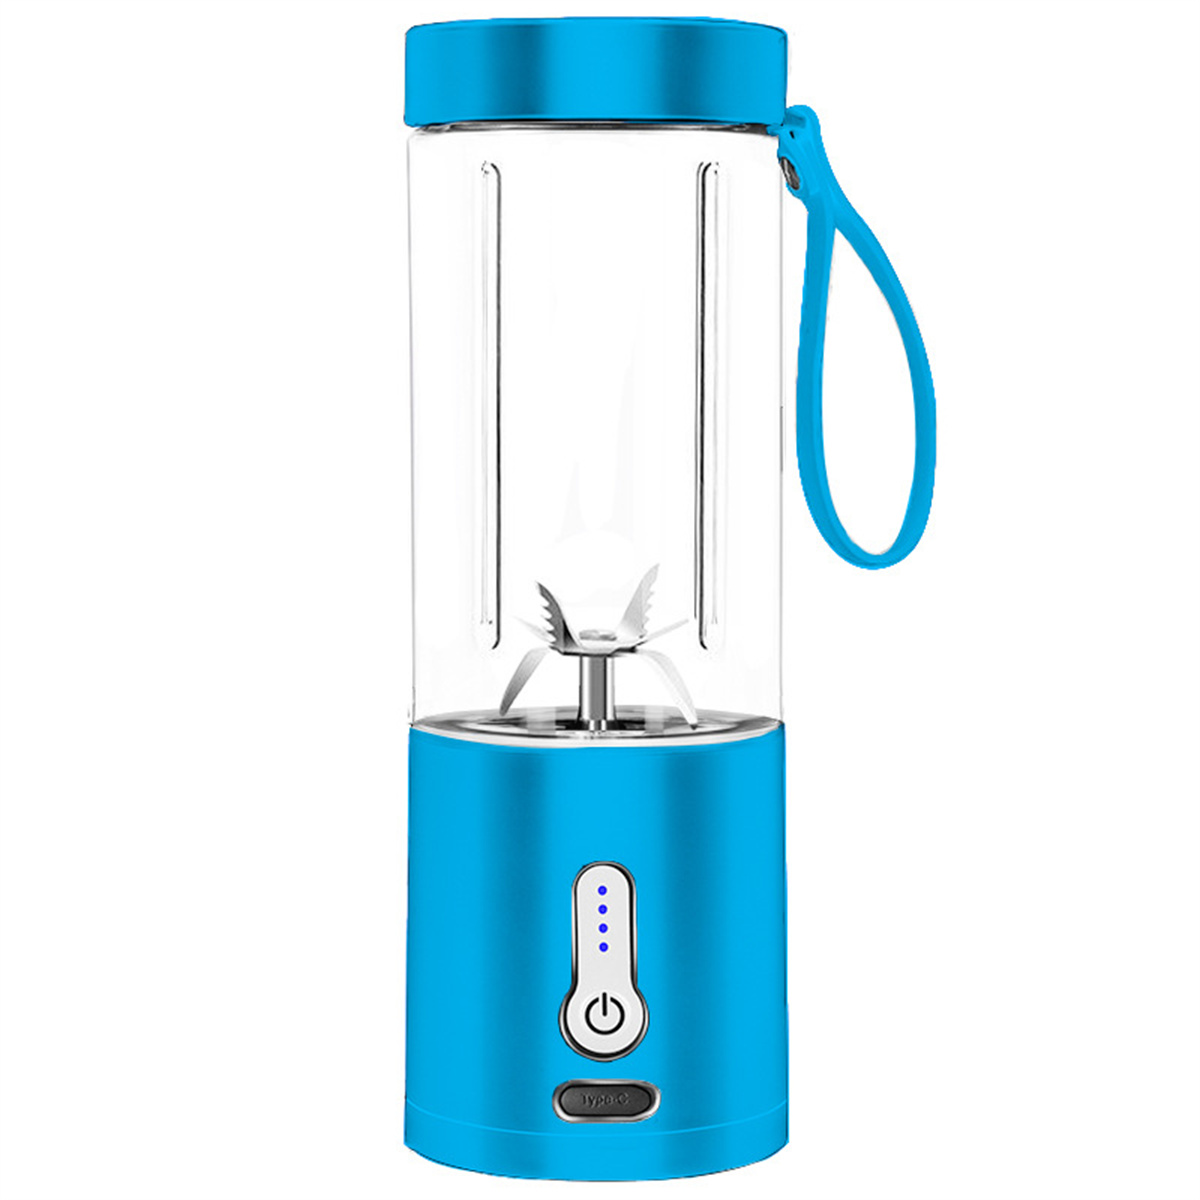 SYNTEK Juice Mug Handkurbel-Entsafter Mixer Entsafter, Blue Tragbarer blau elektrischer Fruchtkocher